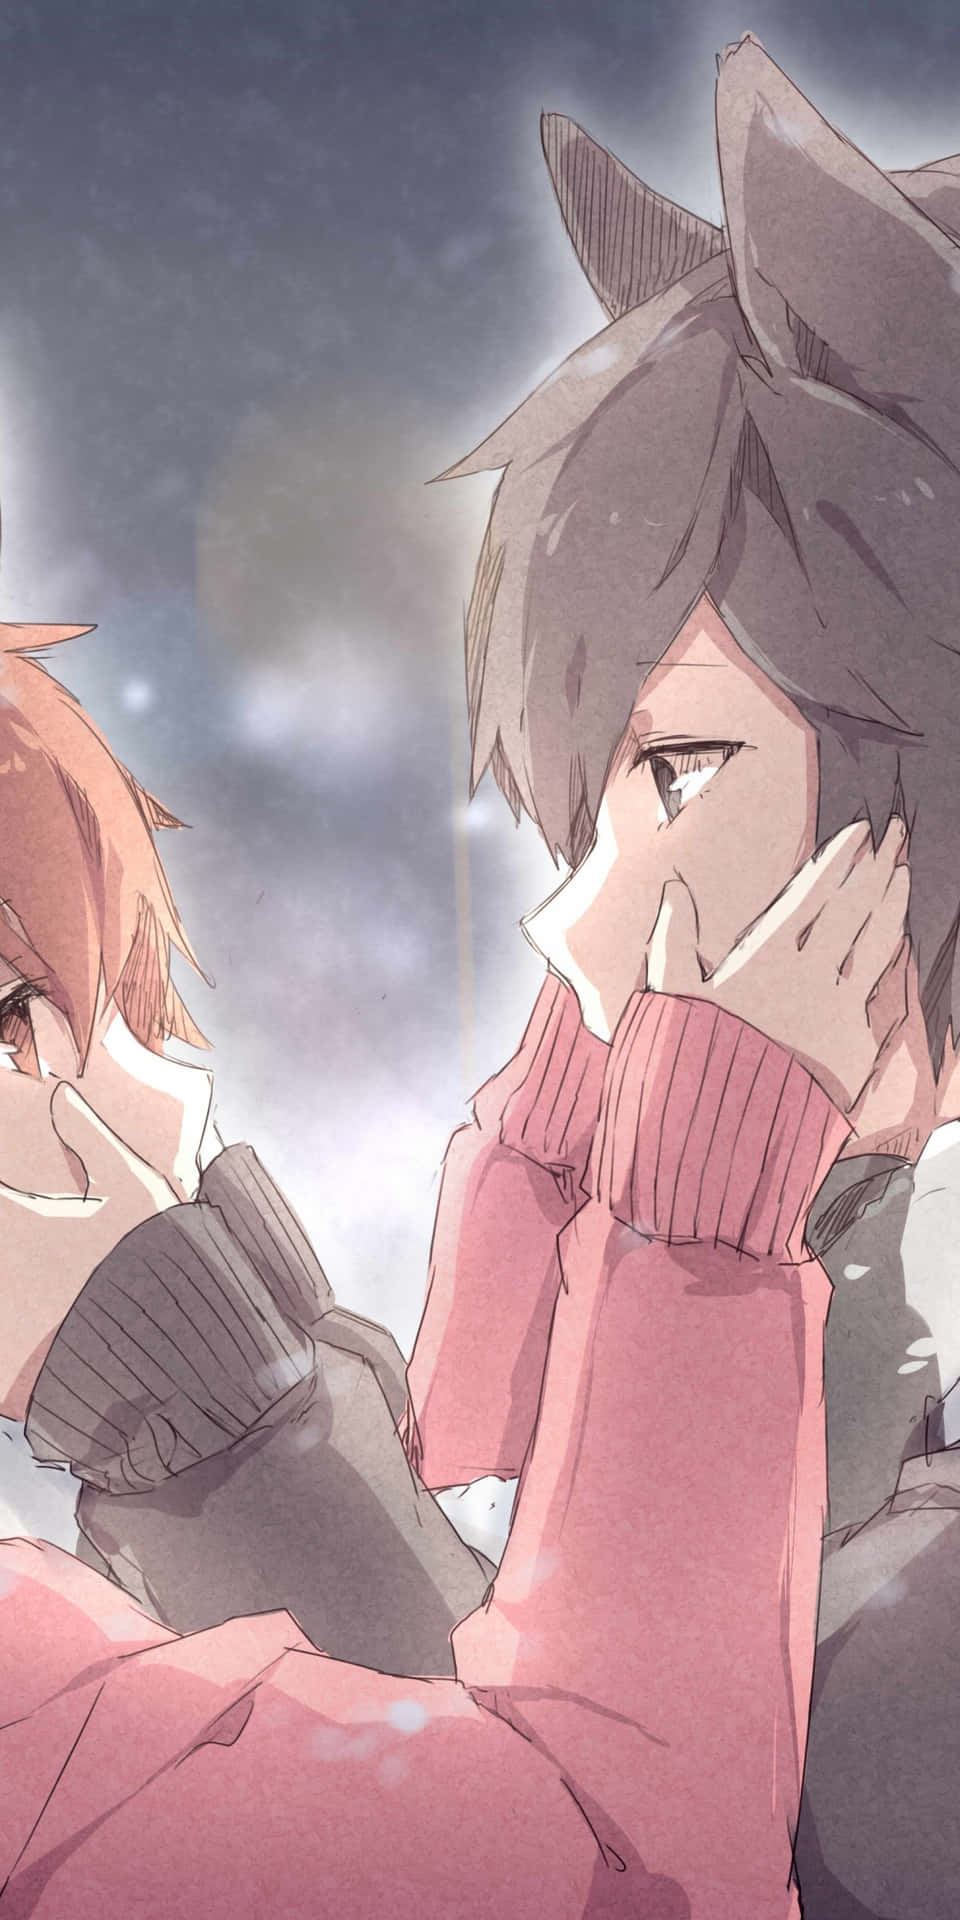 Matching Pfp | Anime pair dp romantic, Dark anime guys, Anime love couple